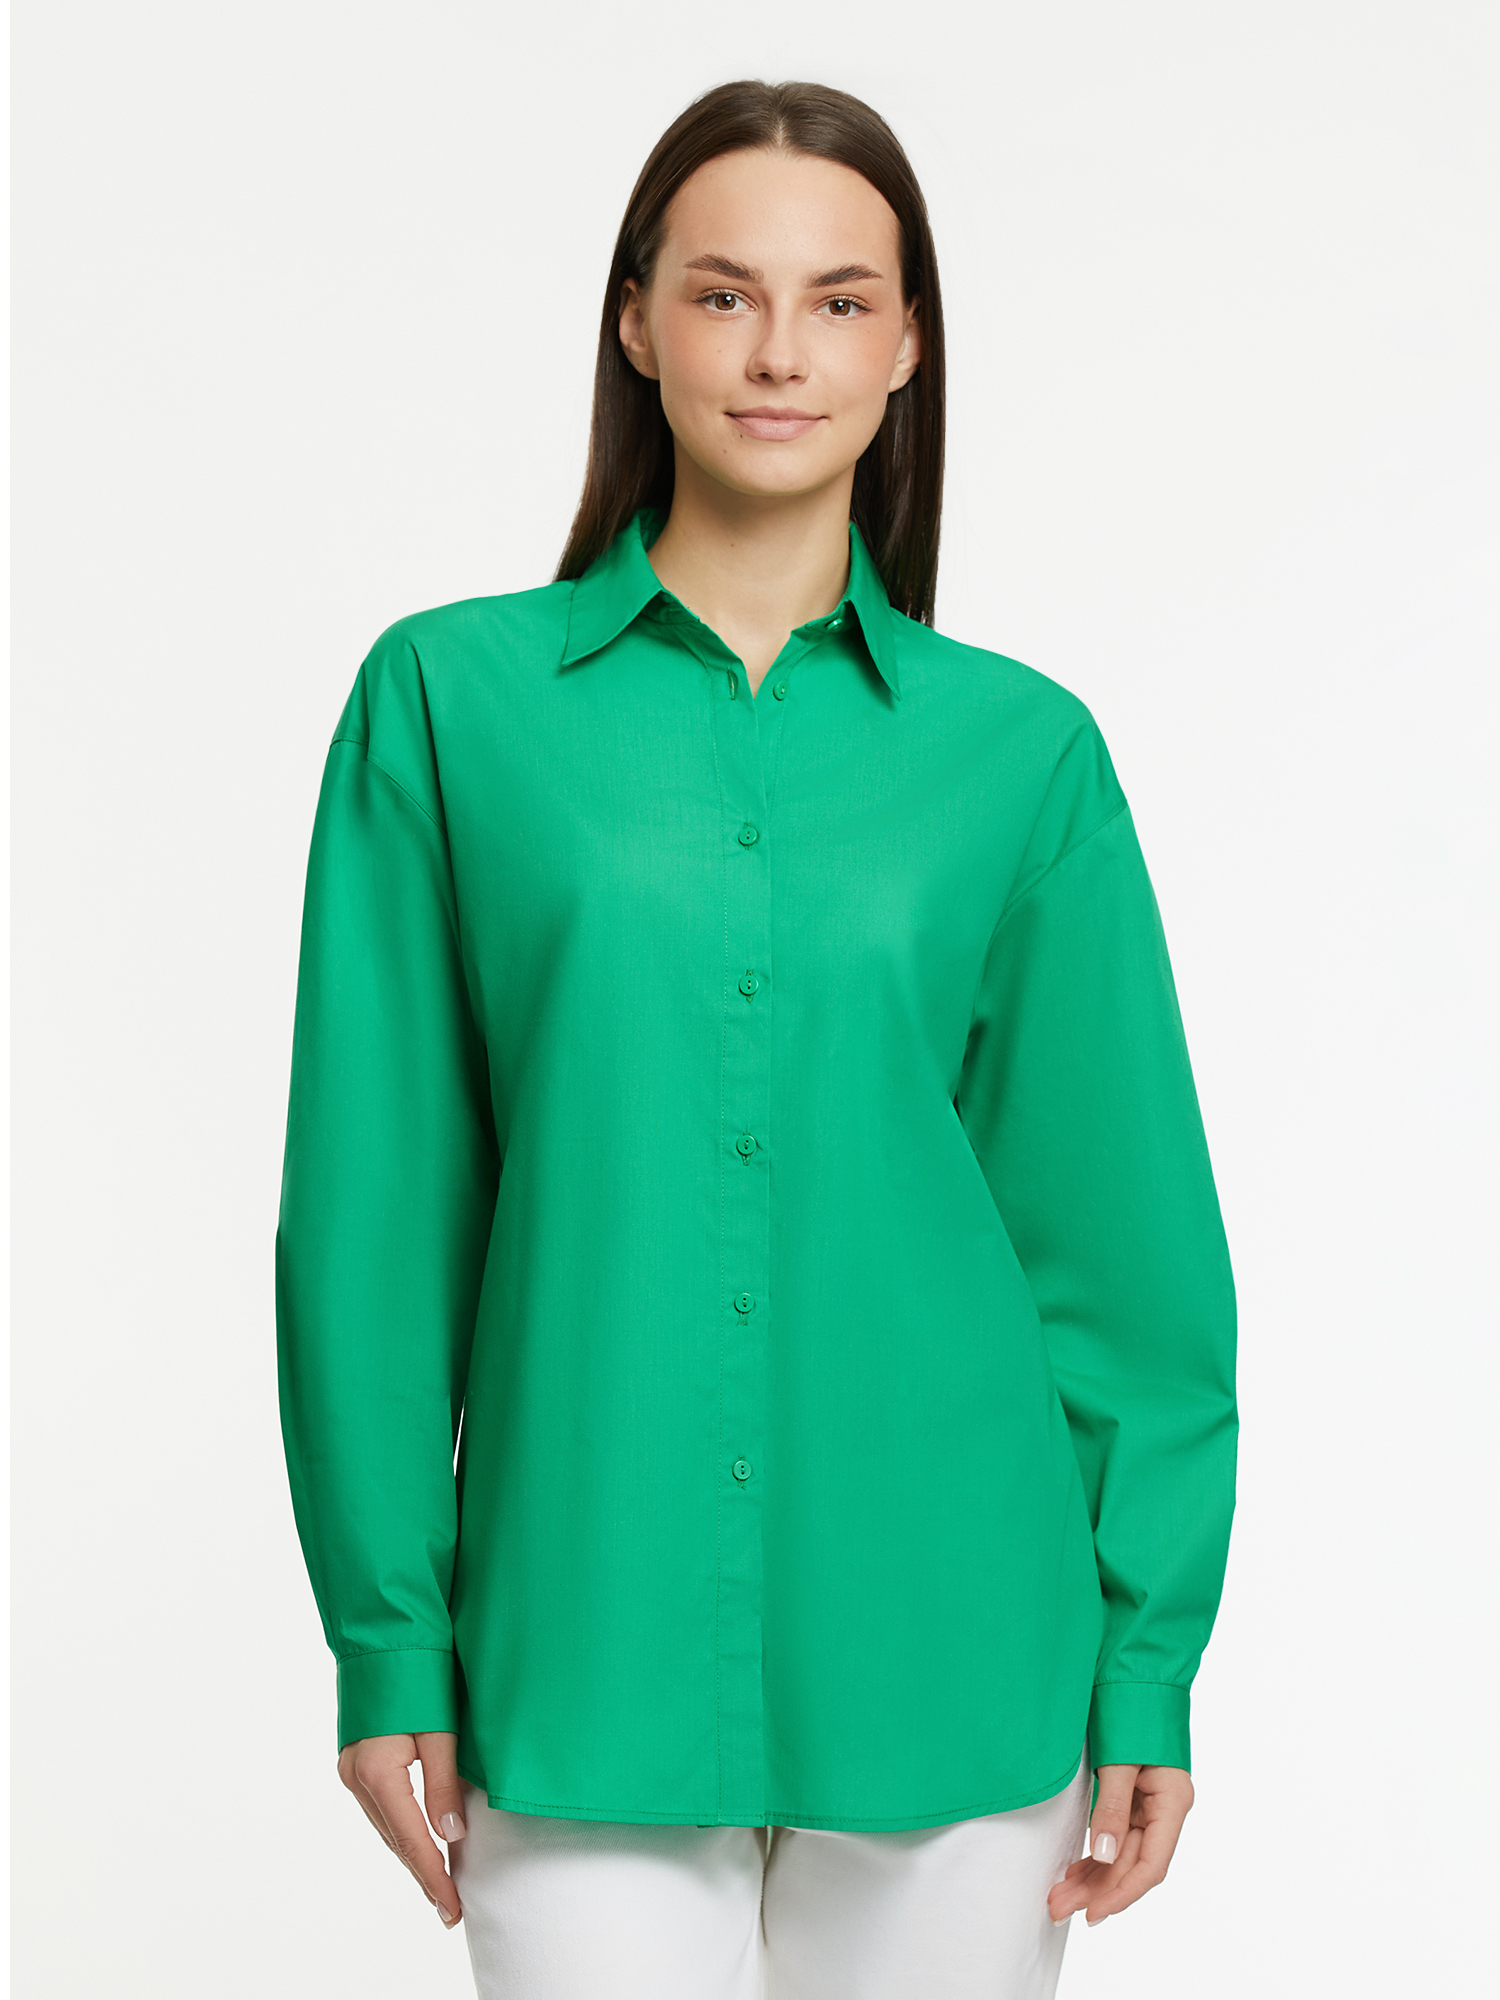 Рубашка женская oodji 13K11041 зеленая 34 EU